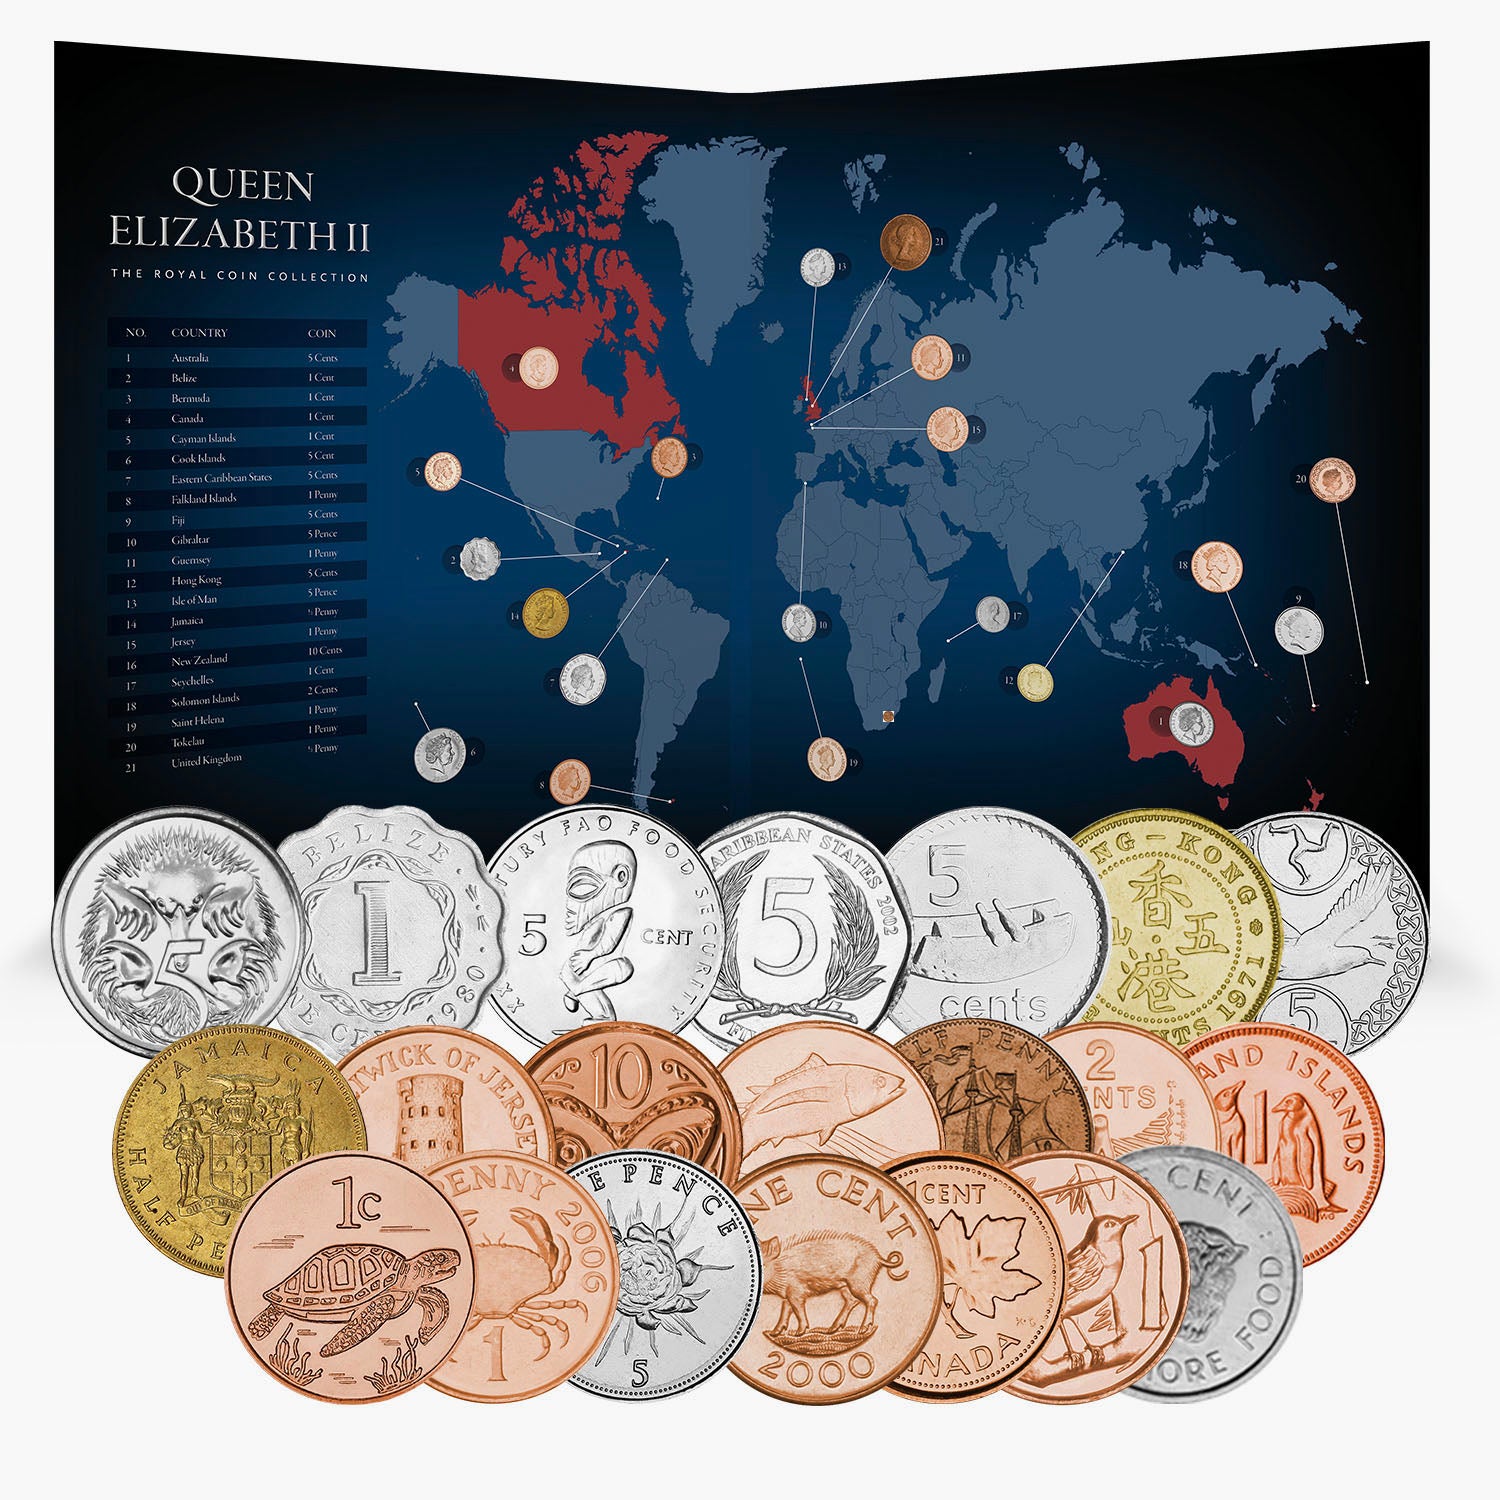 Pièces de monnaie de Sa Majesté la reine Elizabeth II de l'édition de collection du Commonwealth